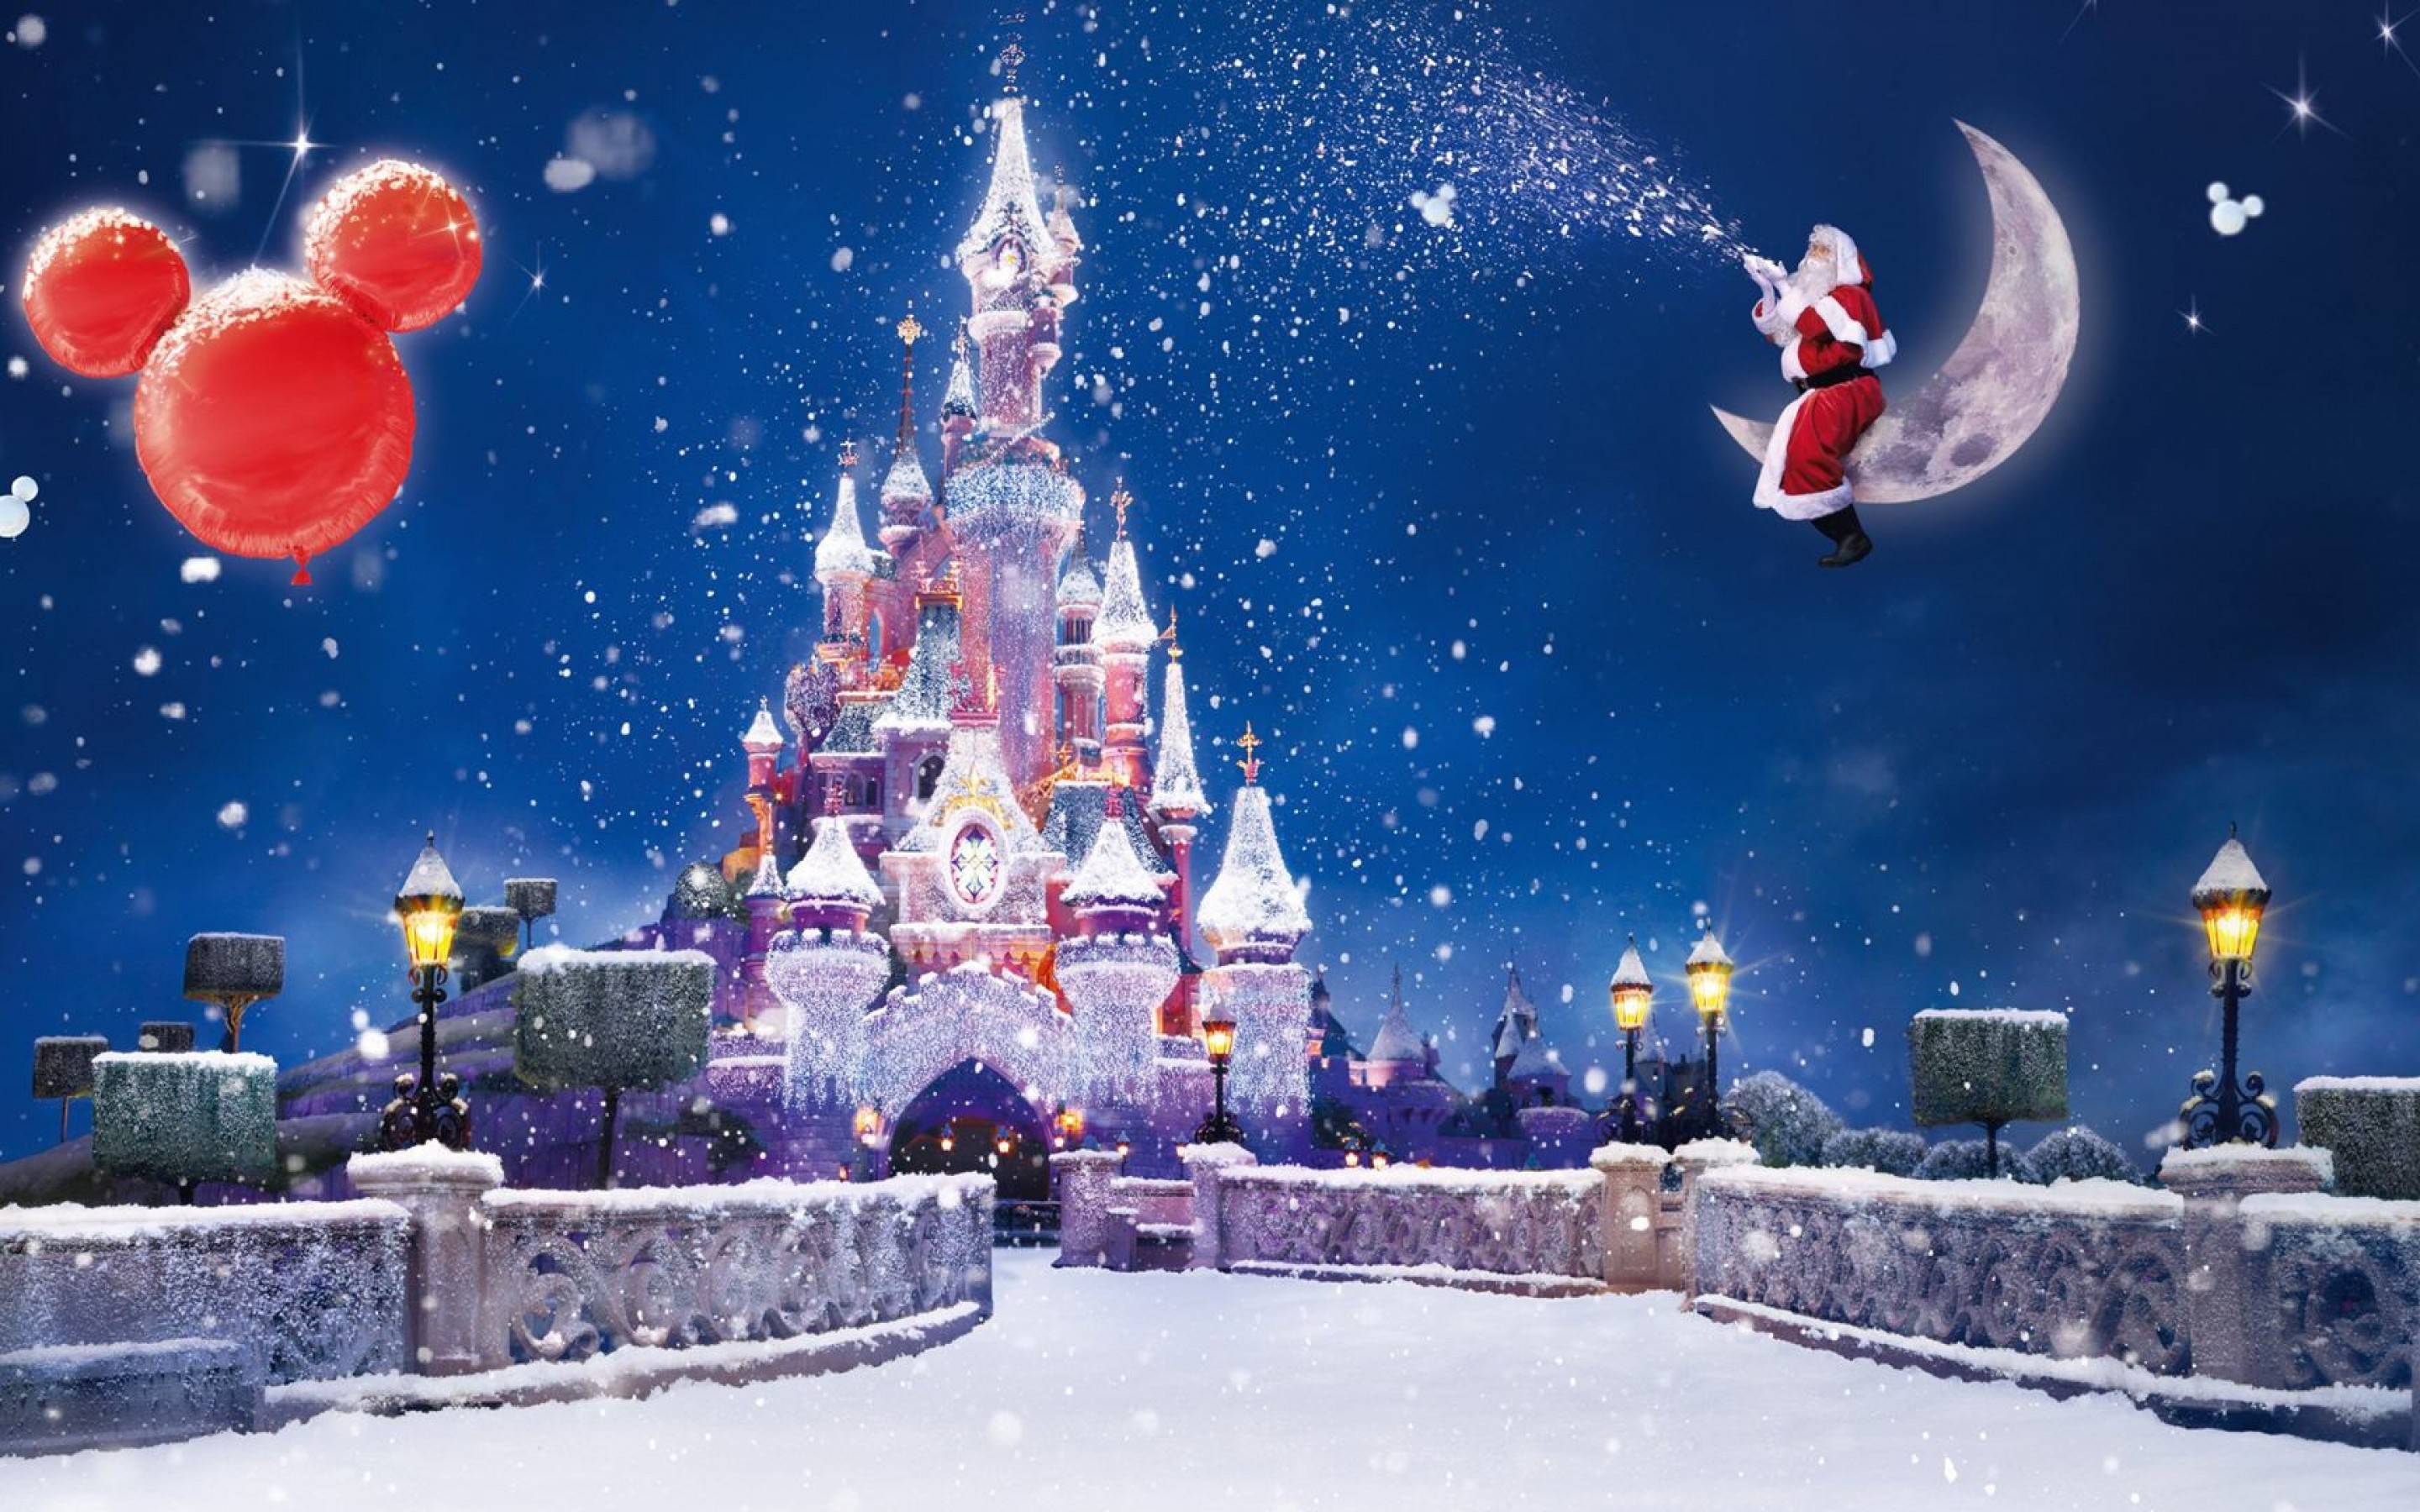 Hình nền Disney Giáng Sinh: Đón Giáng Sinh năm nay bằng những bức hình nền Disney Giáng Sinh đầy màu sắc, ngộ nghĩnh sẽ khiến cho không gian làm việc hay phòng khách của bạn trở nên sinh động và tươi sáng hơn. Hãy thử tìm kiếm và tải về những hình ảnh Disney Giáng Sinh đẹp nhất để góp phần mang đến cho gia đình mình một mùa lễ hội trọn vẹn.